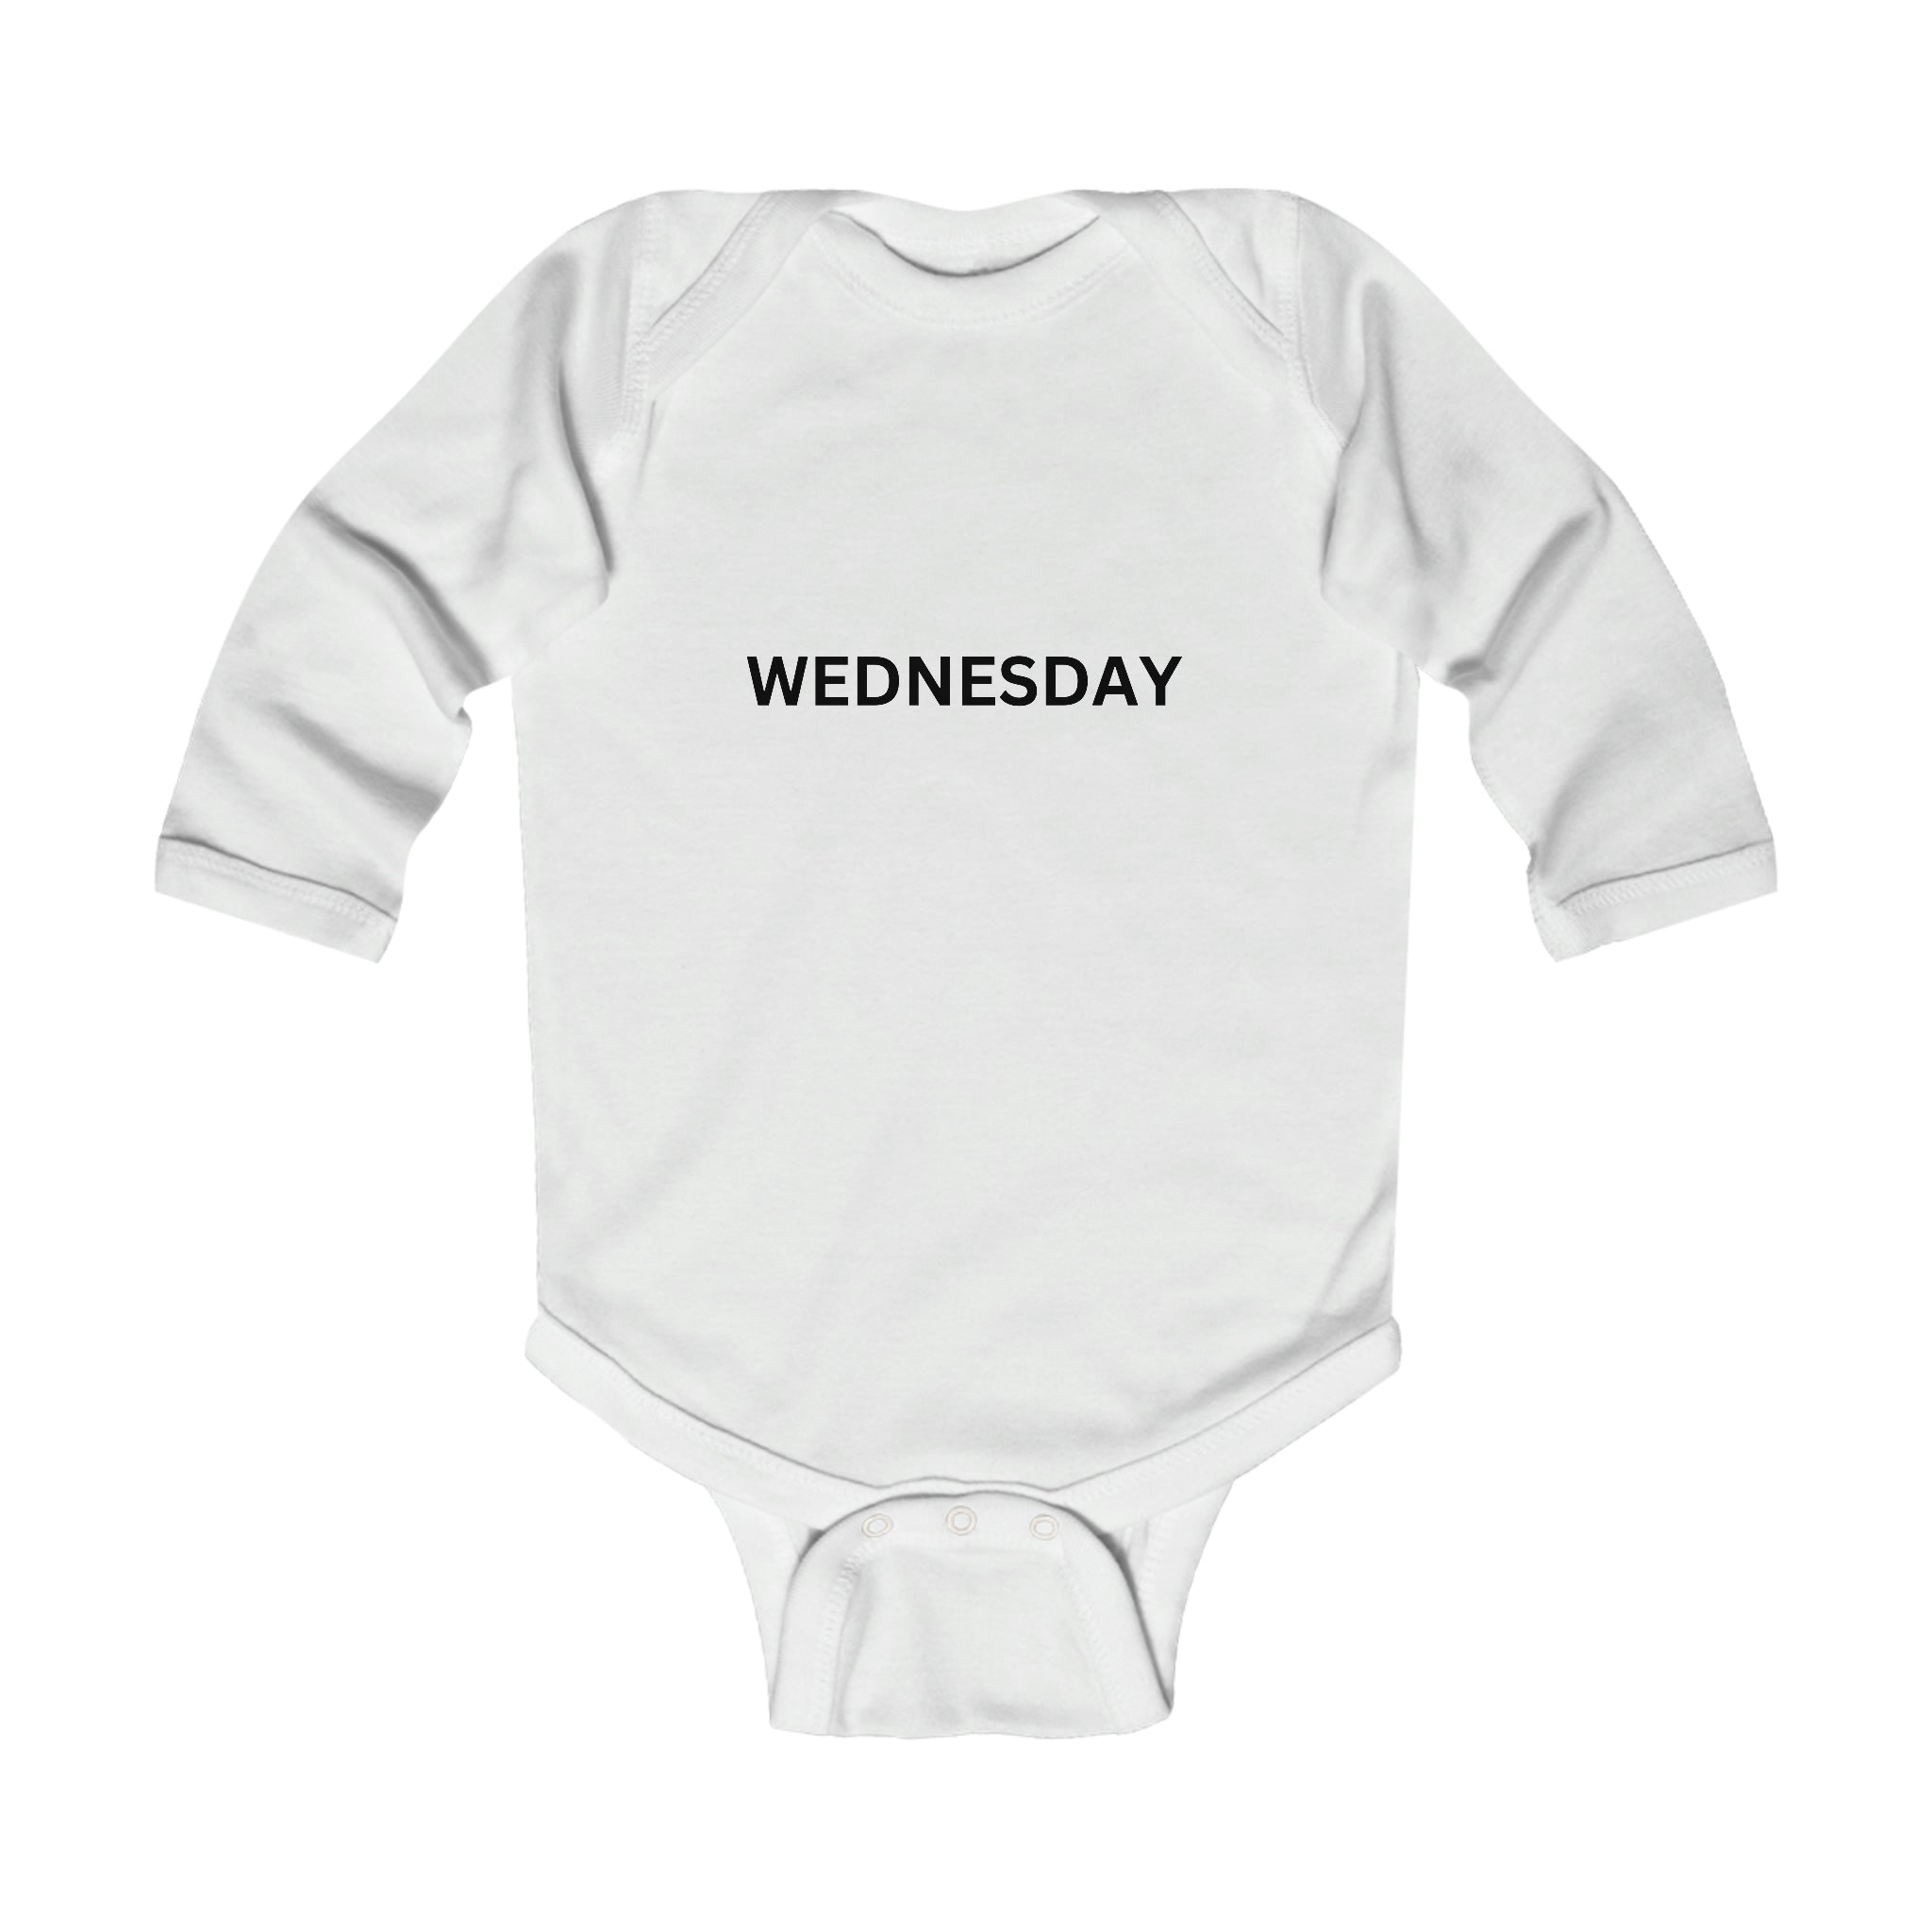 Wednesday Long Sleeve Baby Bodysuit